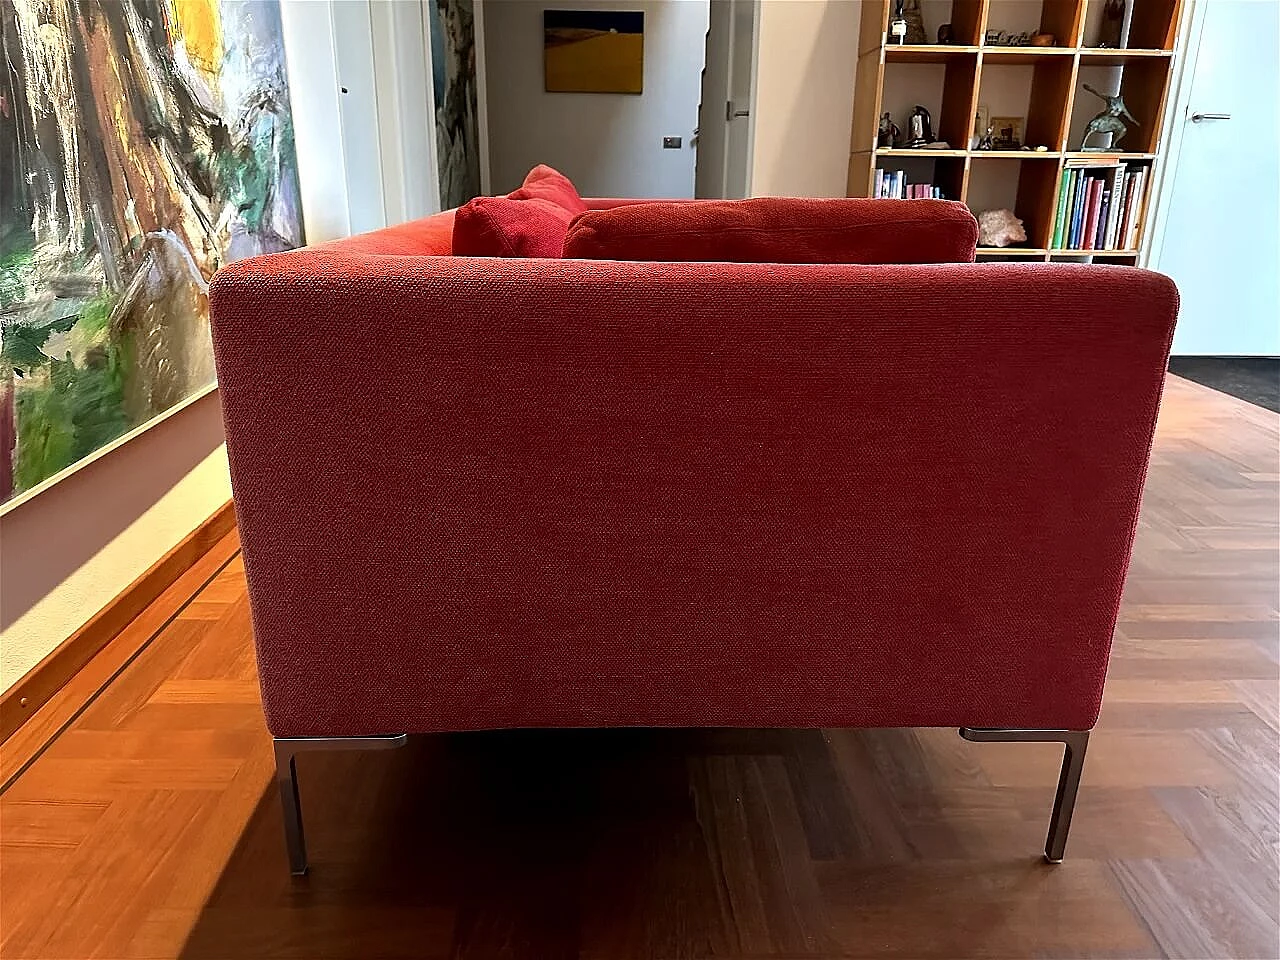 CH228 Charles sofa in red Maxalto-Cat cotton by Antonio Citterio for B&B Italia 3